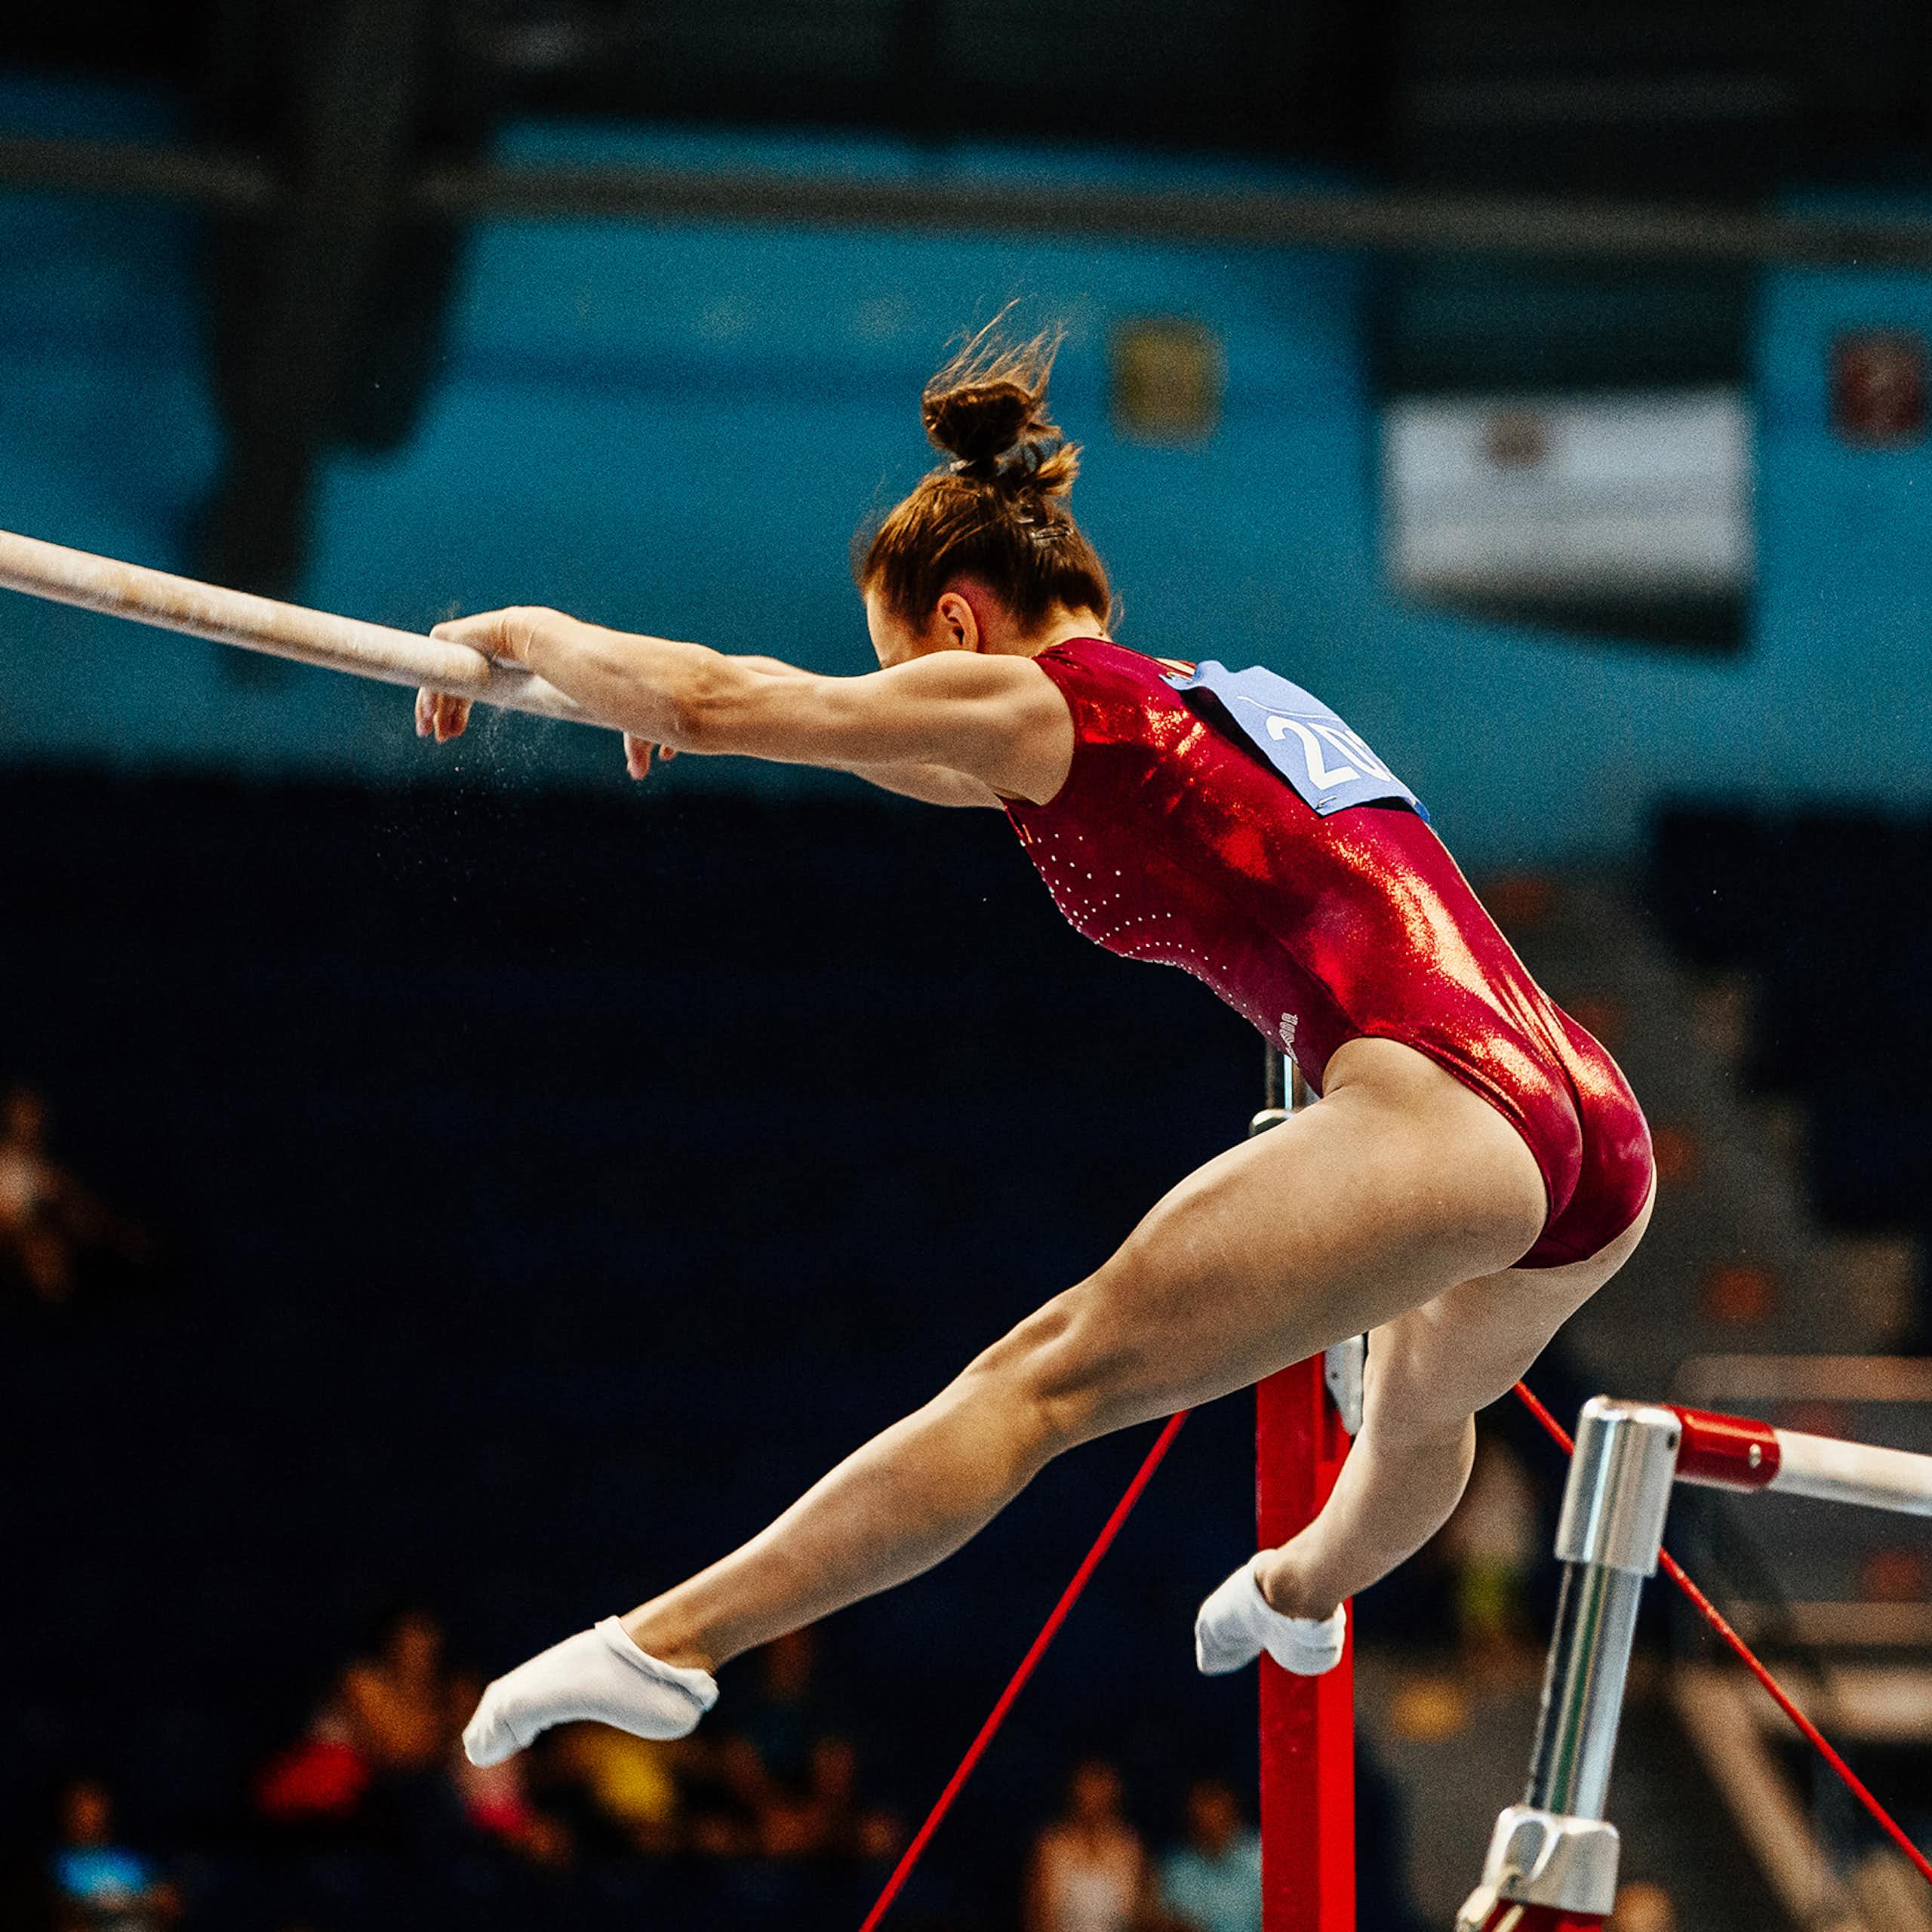 Une gymnaste effectue un exercice sur des barres asymétriques lors d'une compétition.